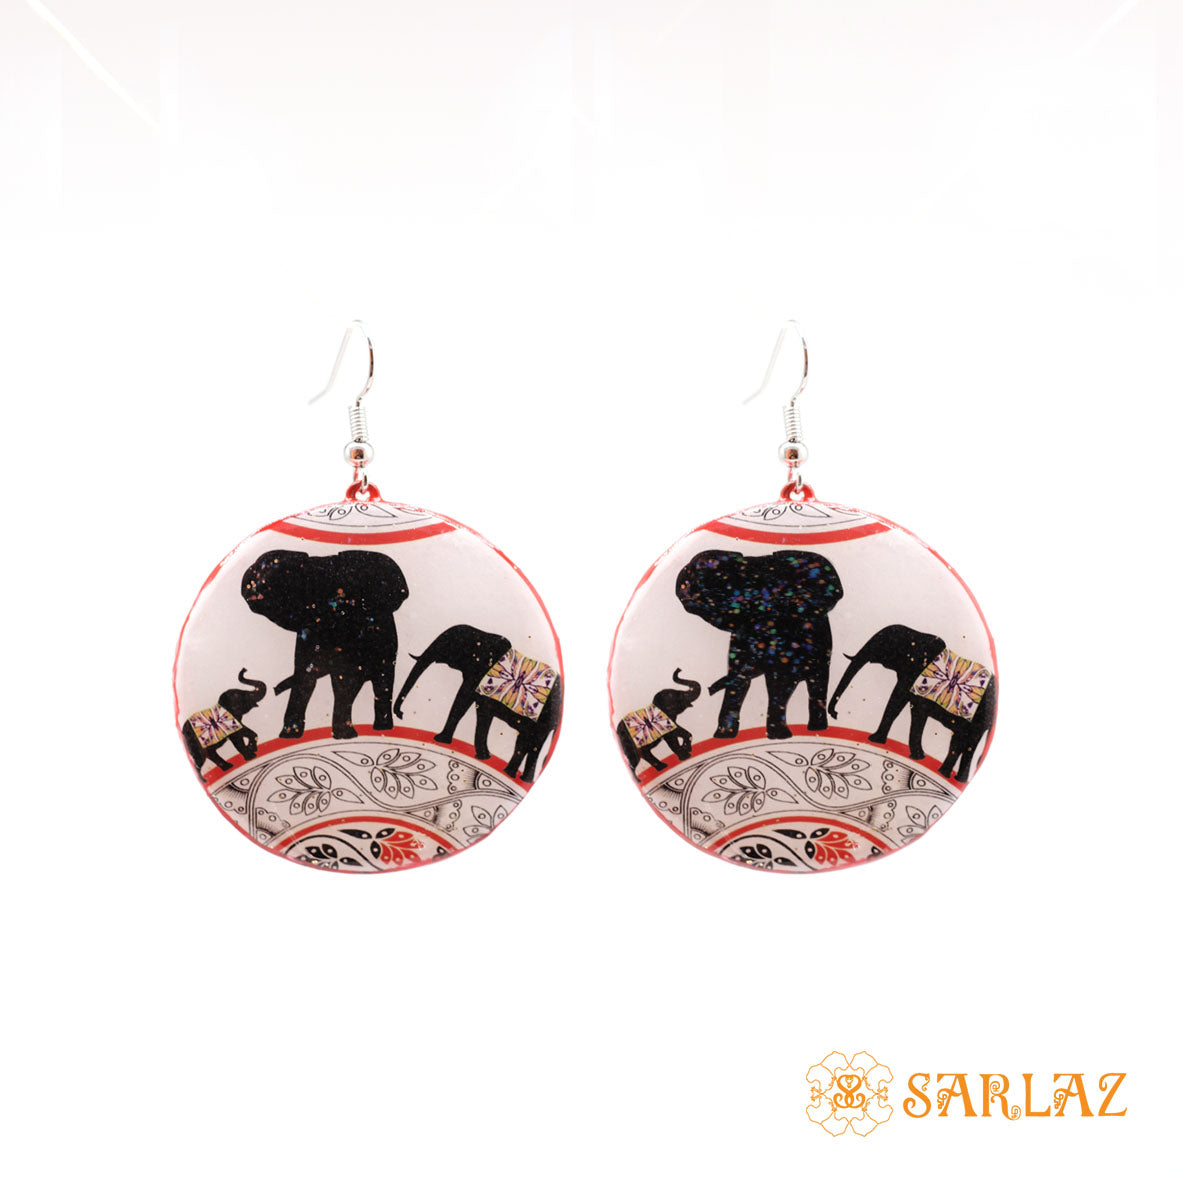 Cute elephant family earrings — Animal Theme Statement earrings — Heart to heart